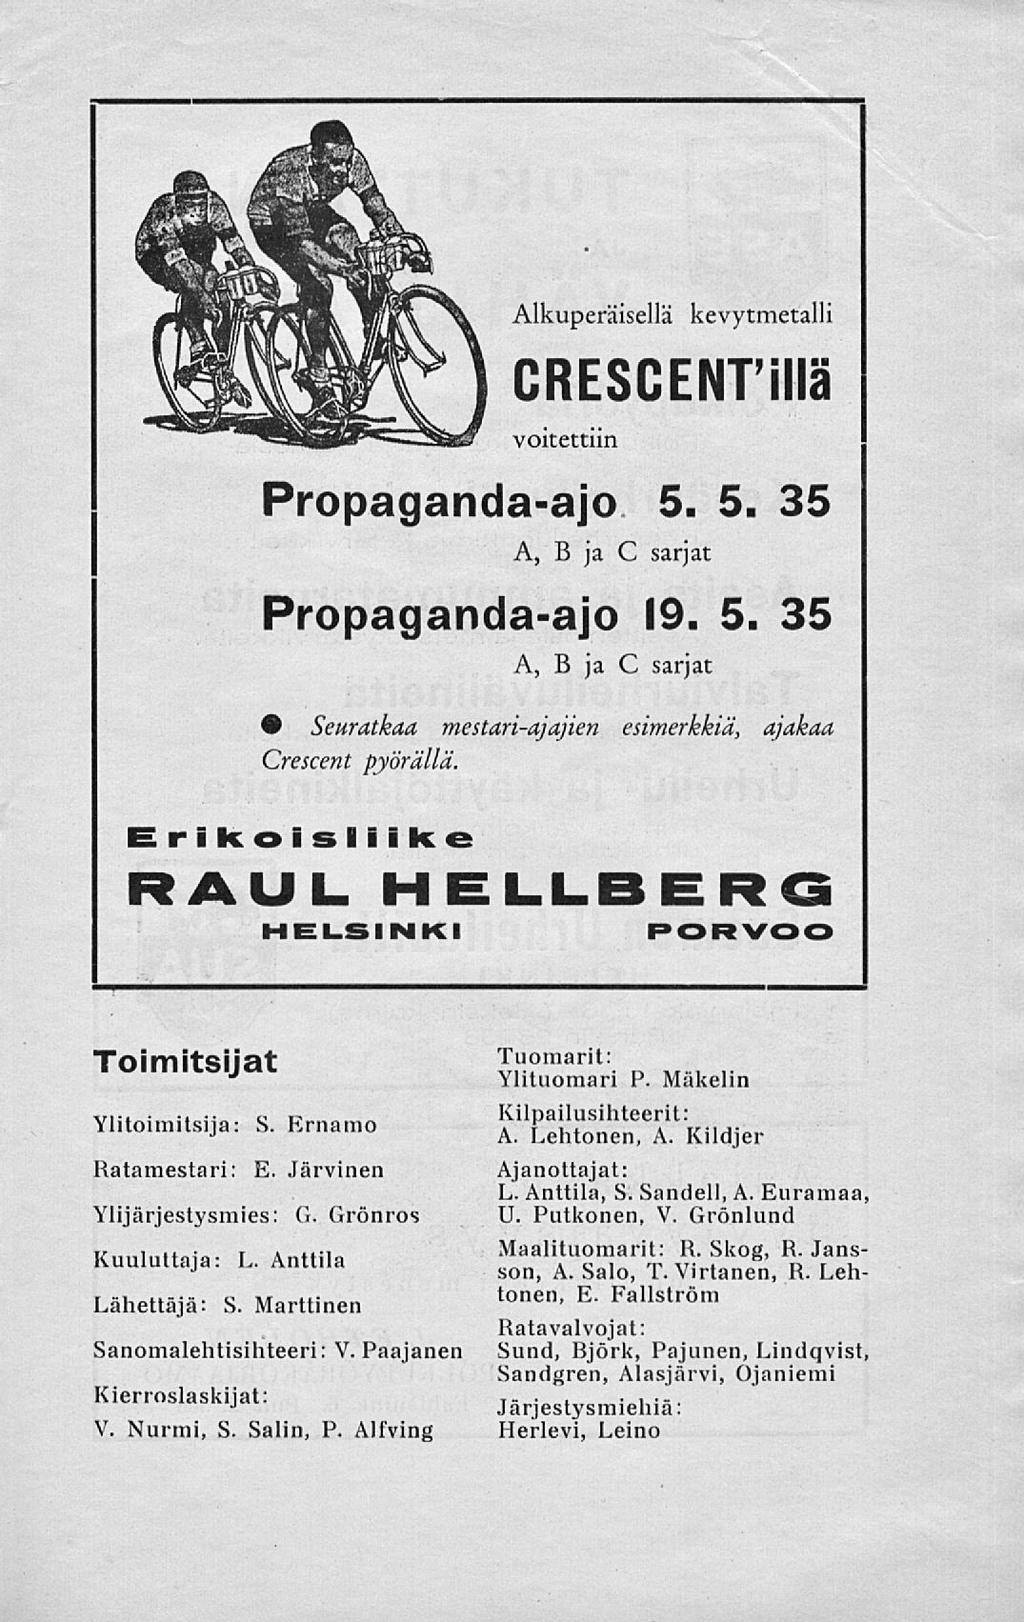 Alkuperäisellä kevytmetalli CRESCENTiIIä voitettiin Propaganda-ajo 5. 5. 35 A, B ja C sarjat Propaganda-ajo 19. 5. 35 A, B ja C sarjat Seuratkaa mestari-ajajien esimerkkiä, ajakaa Crescent pyörällä.